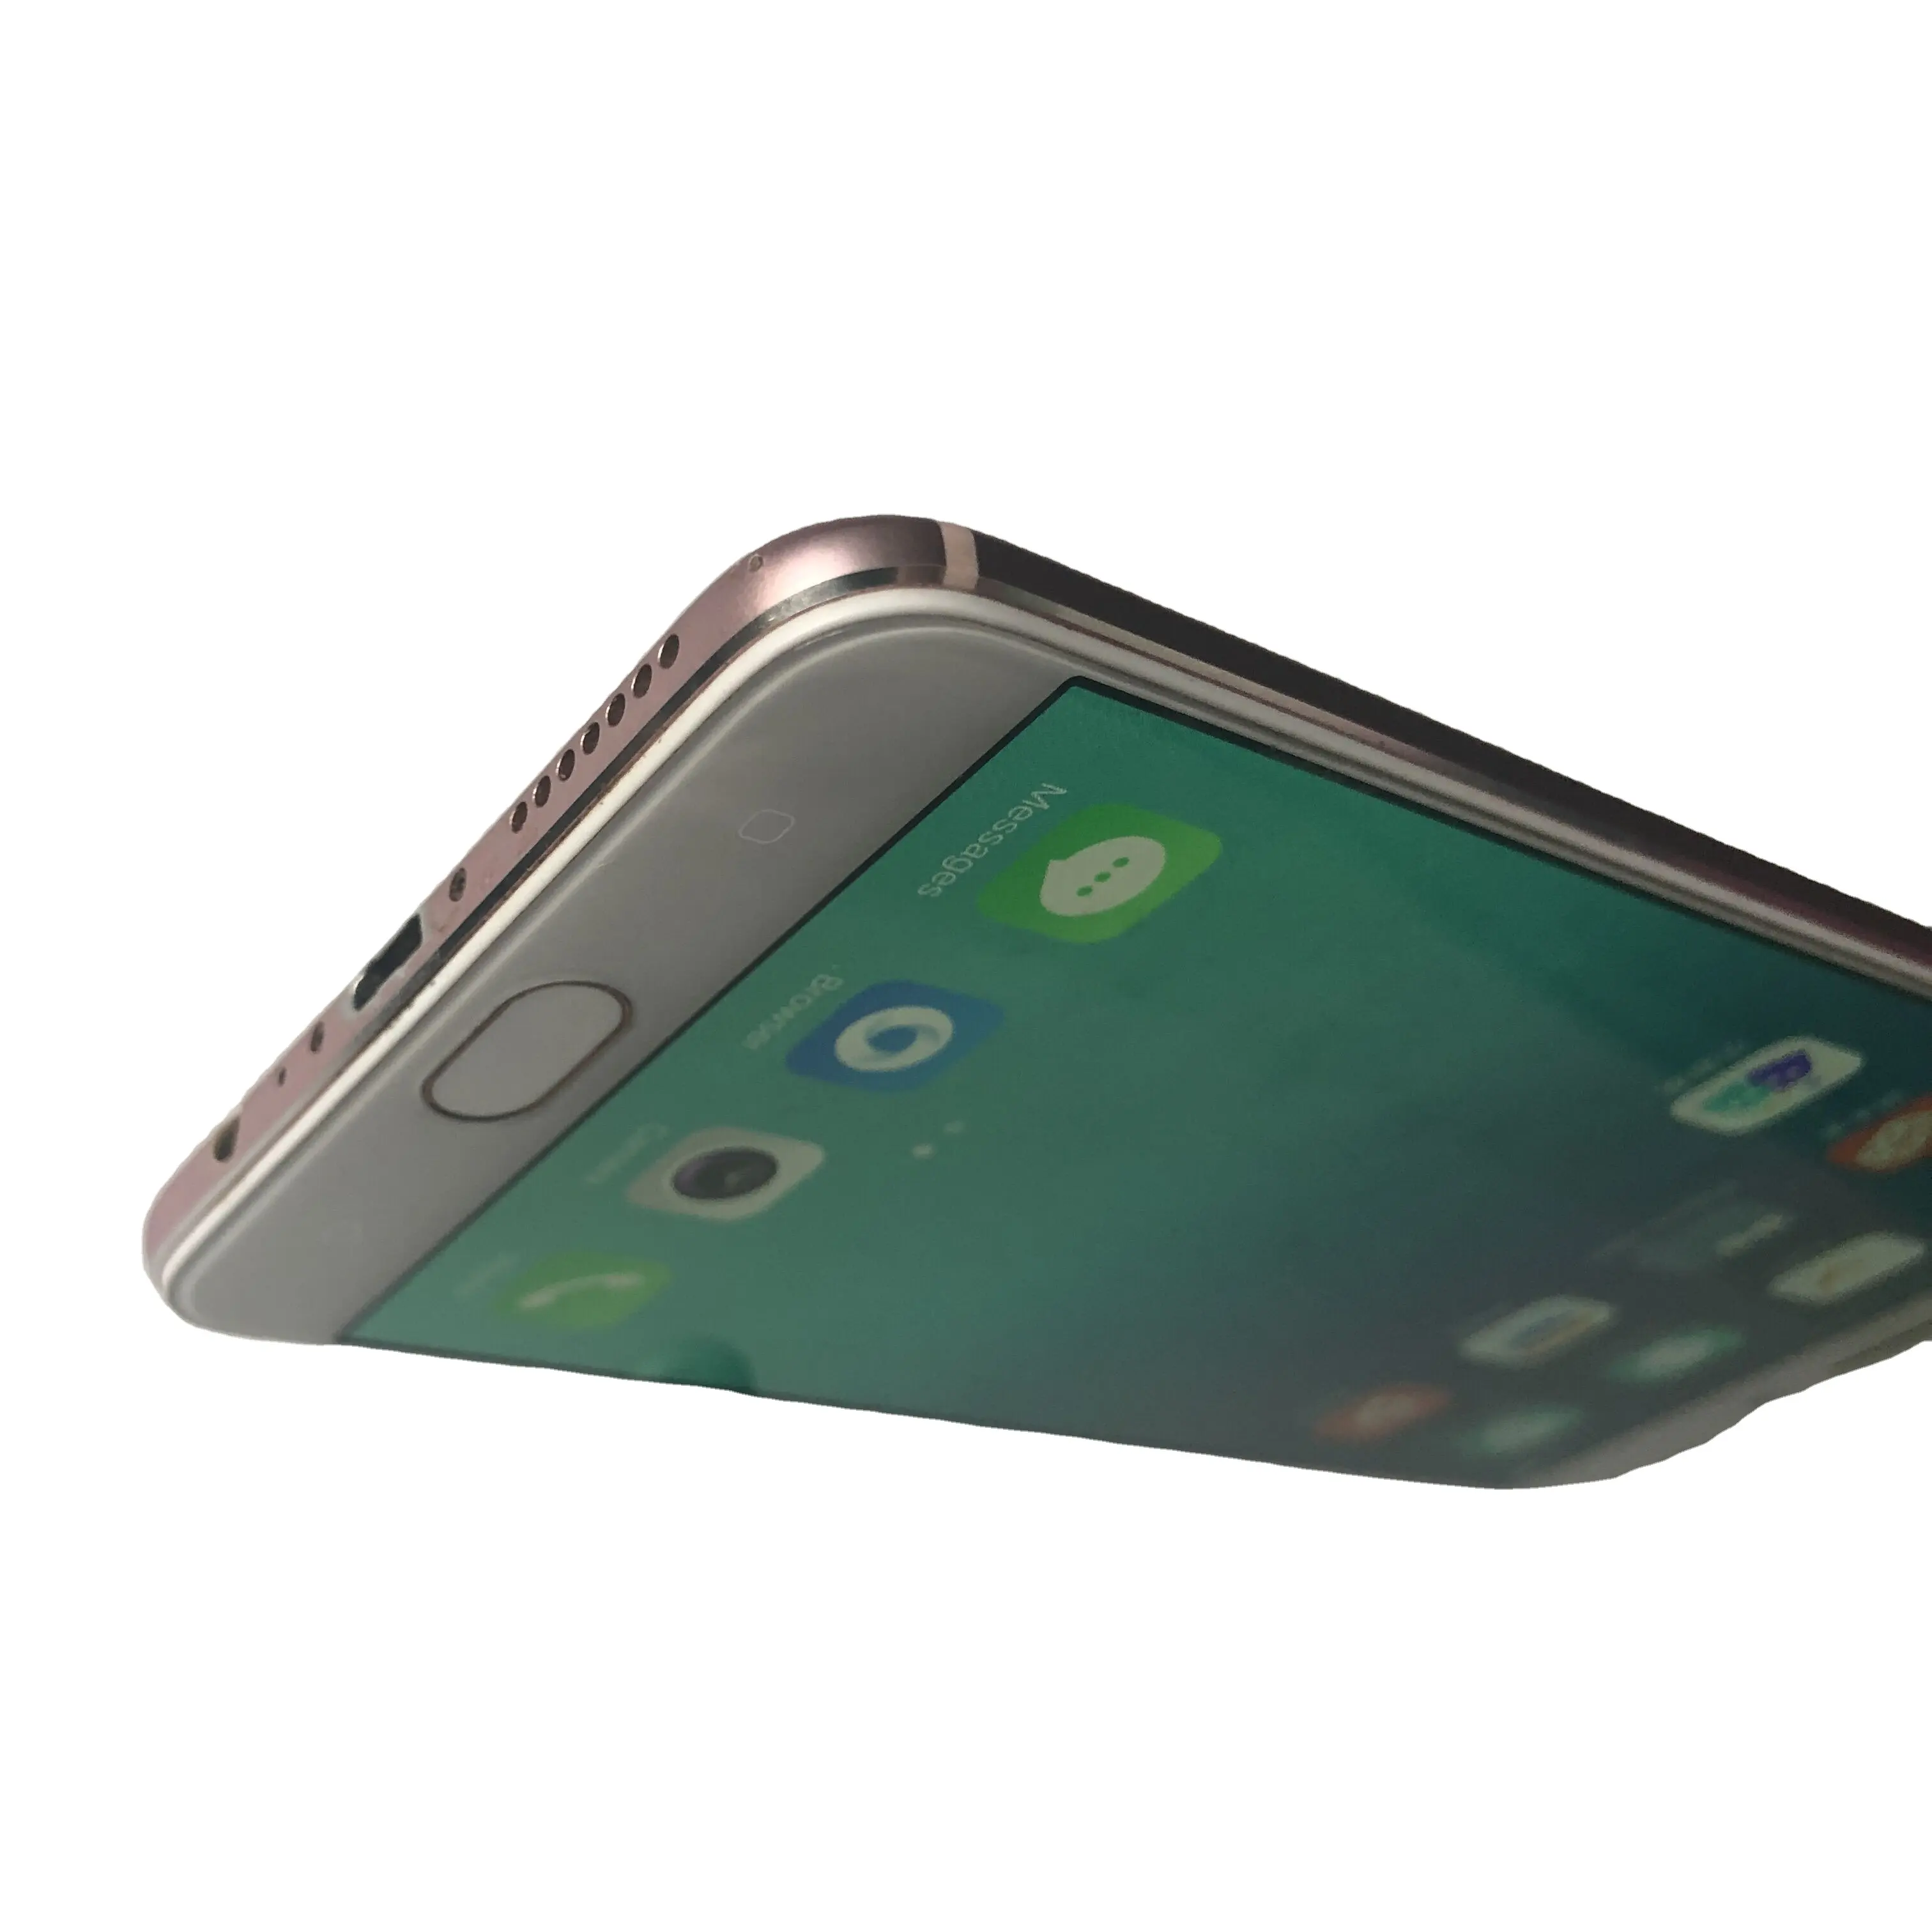 Teléfono Android usado original para OPPO A57, 3 + 32G, nuevo Octa core con huella dactilar, 90%, venta al por mayor